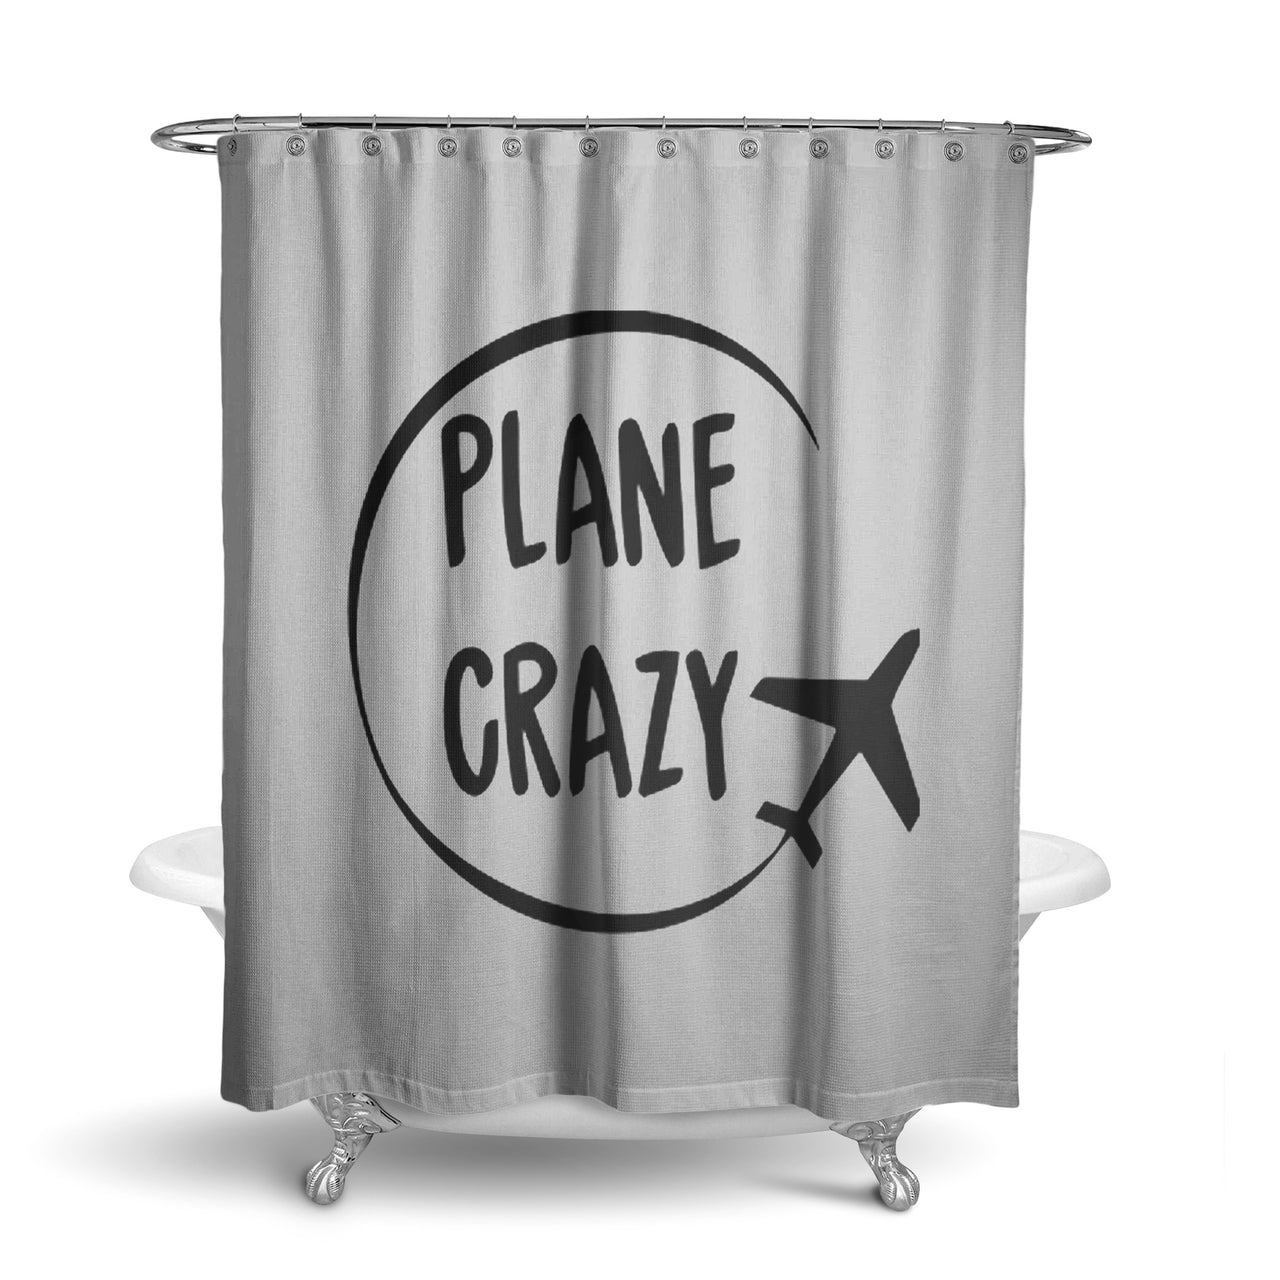 Plane Crazy Designed Shower Curtains